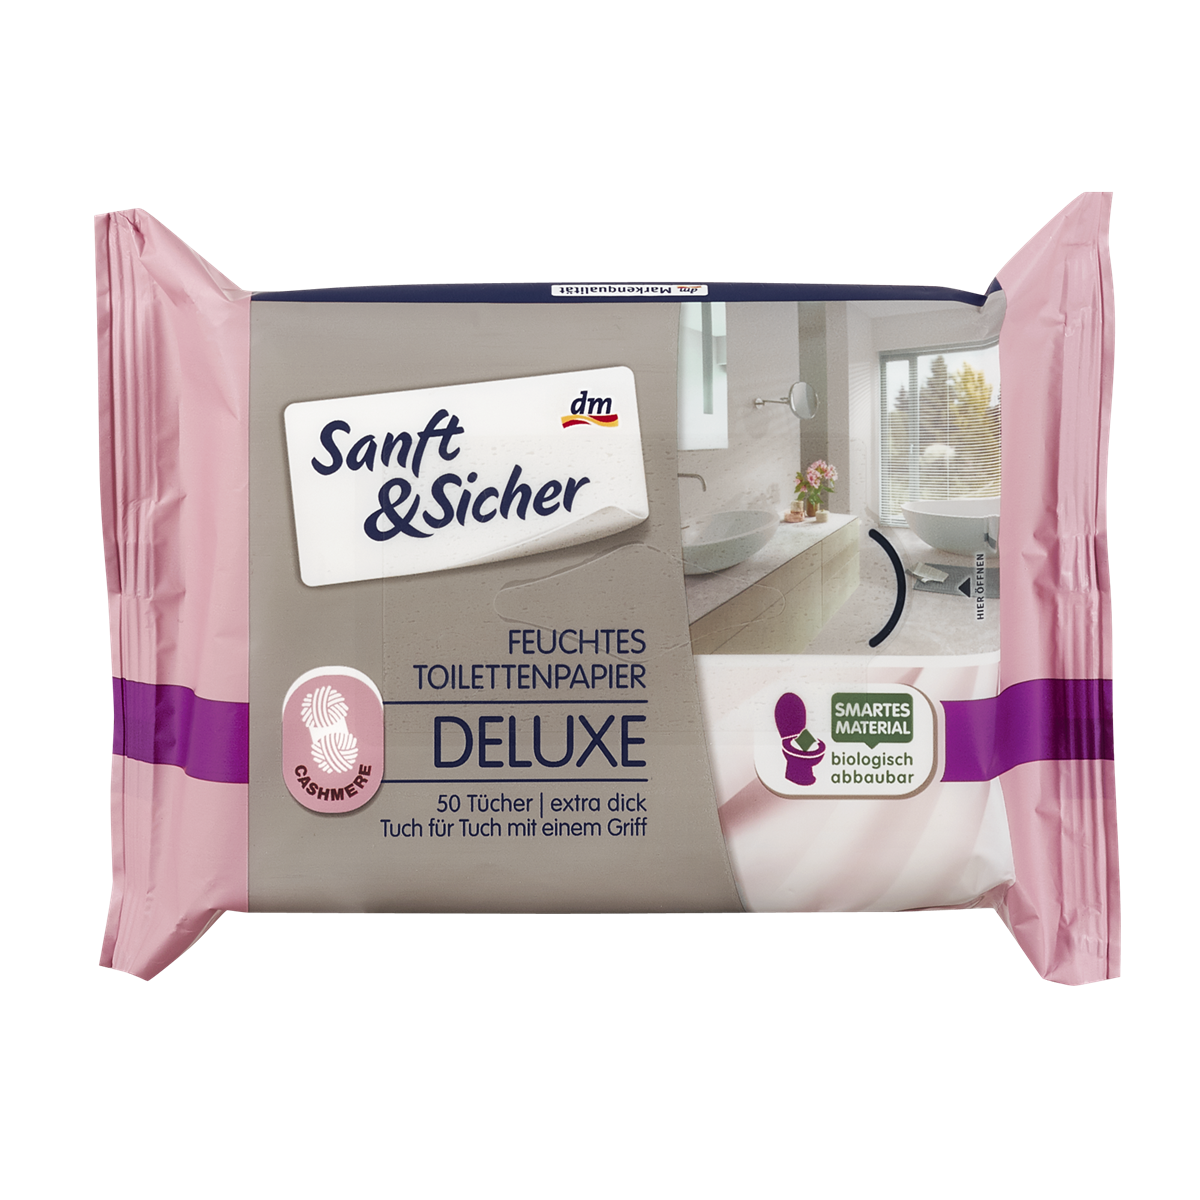 Sanft&Sicher Feuchtes Toilettenpapier Deluxe Cashmere 50 Stk. 1,25 €